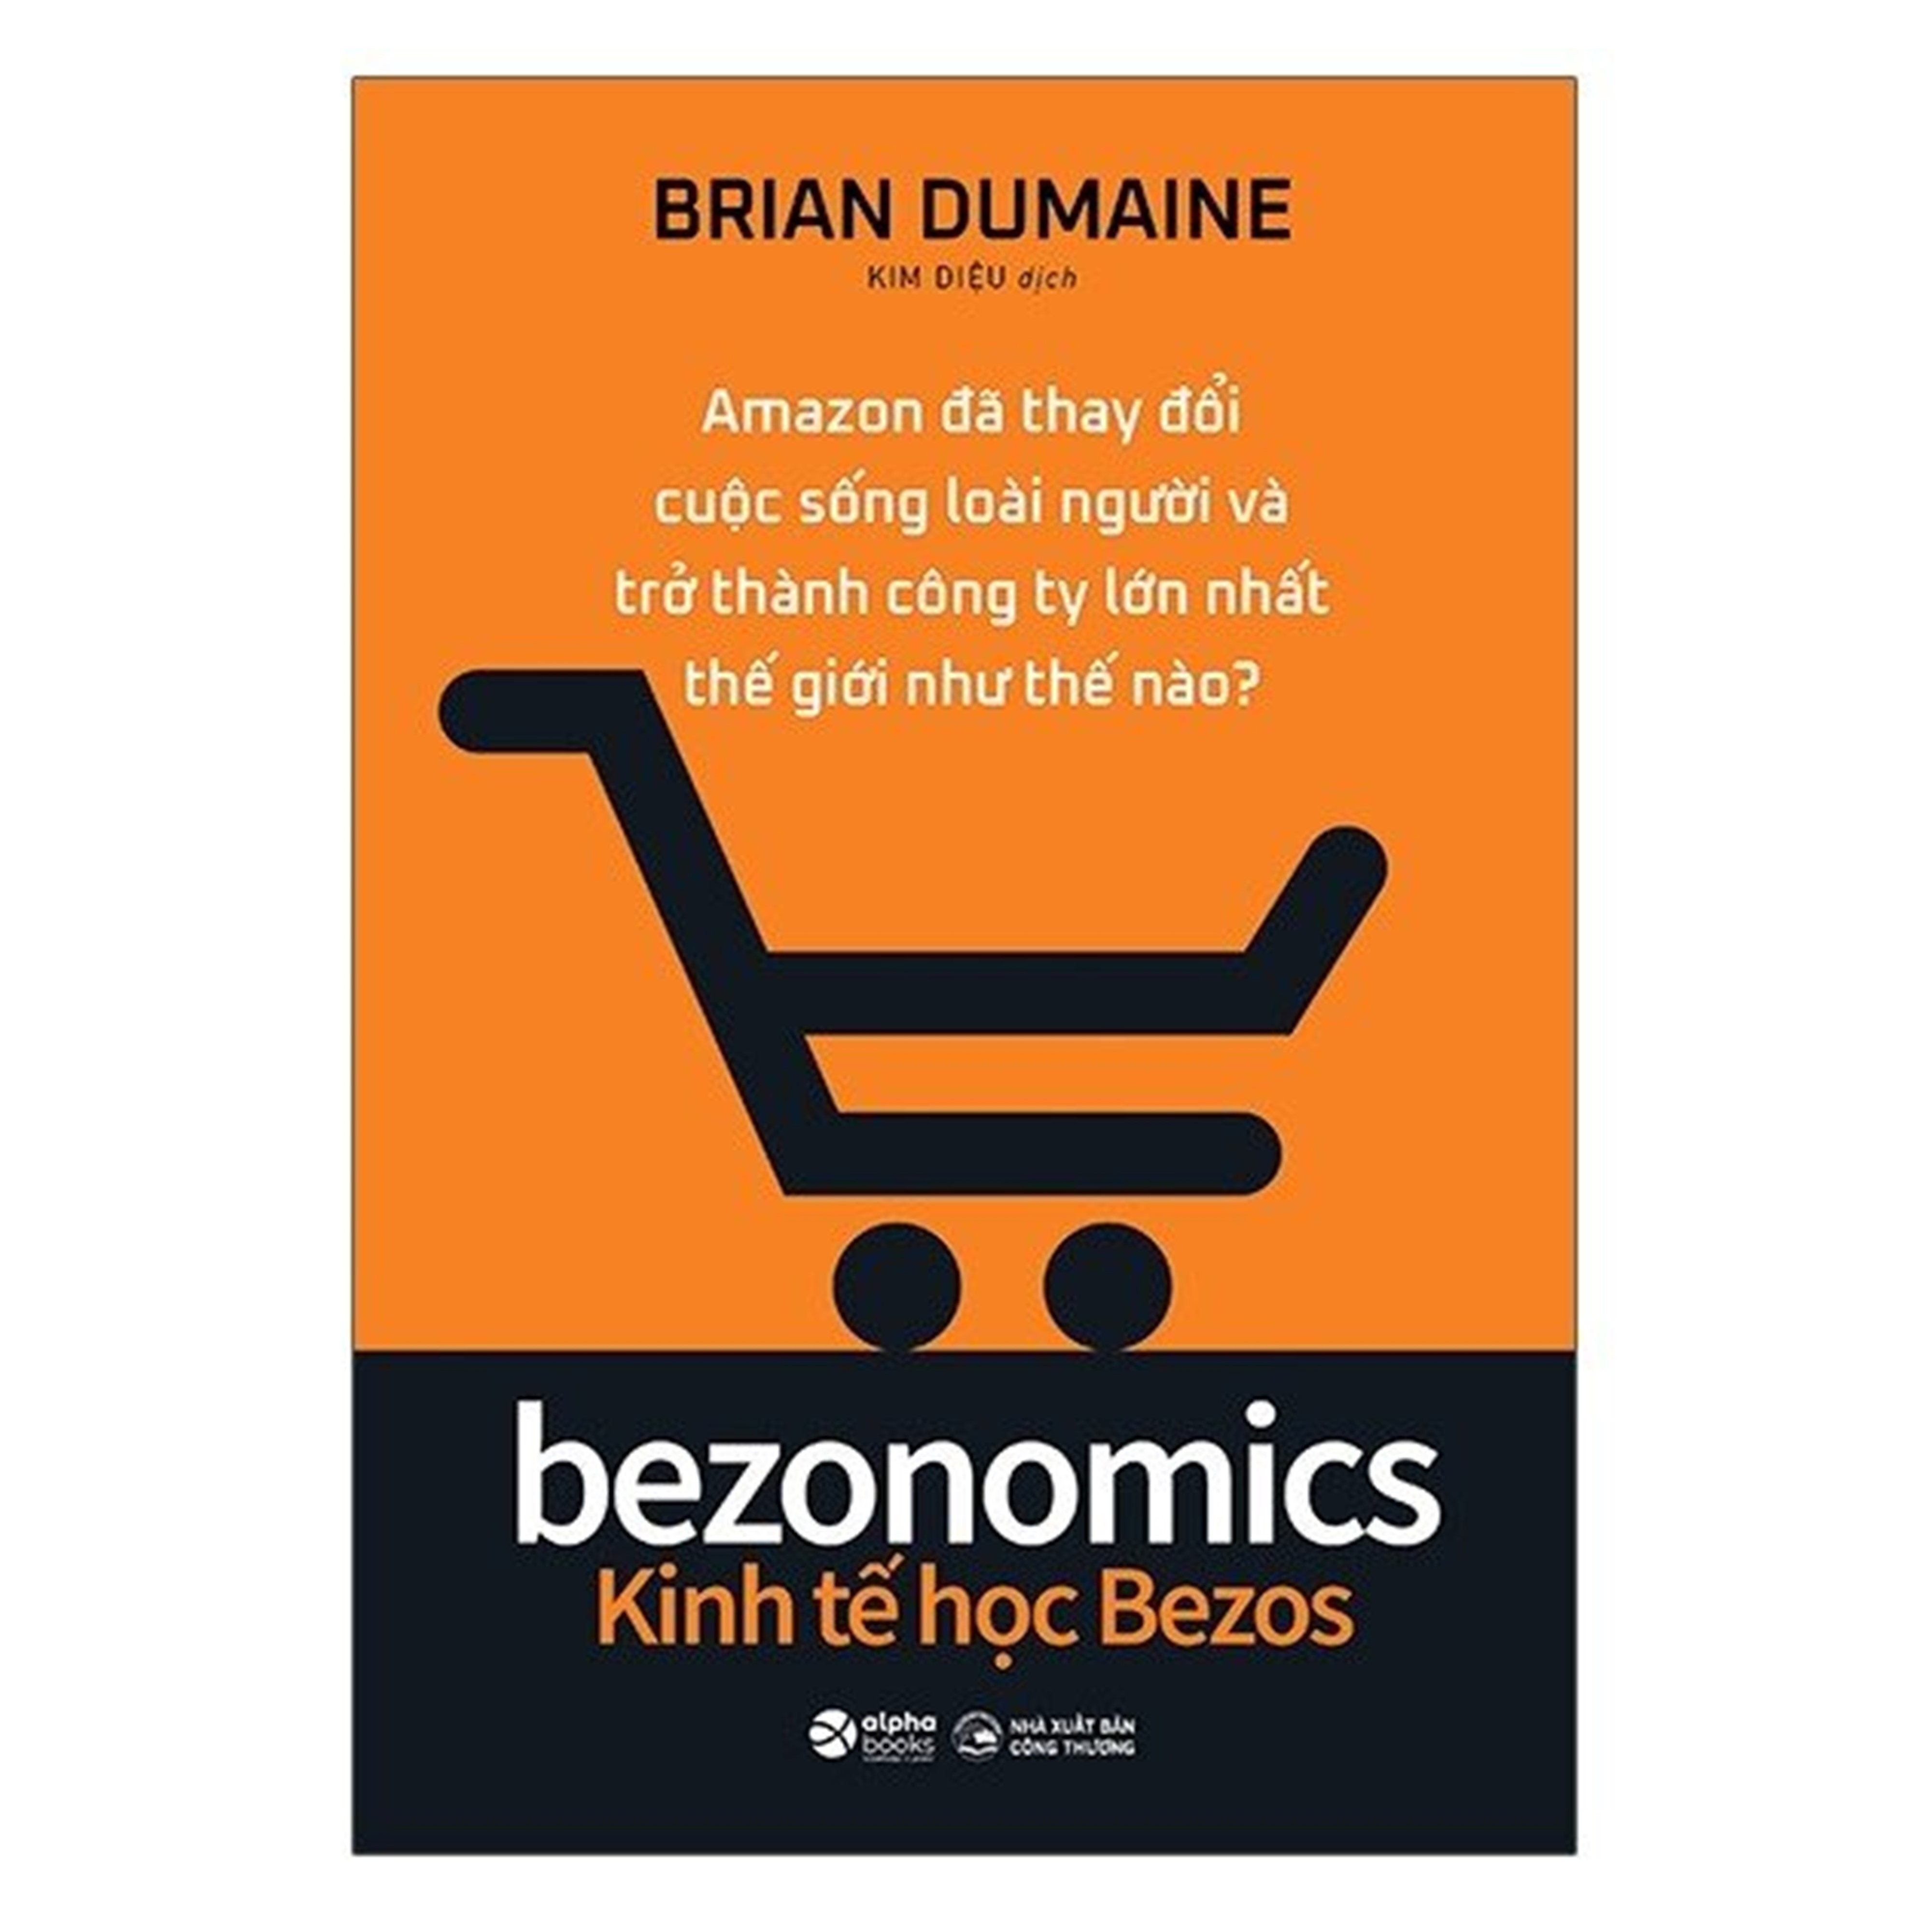 Combo Kinh Tế Học Bezos + Phương Thức Amazon